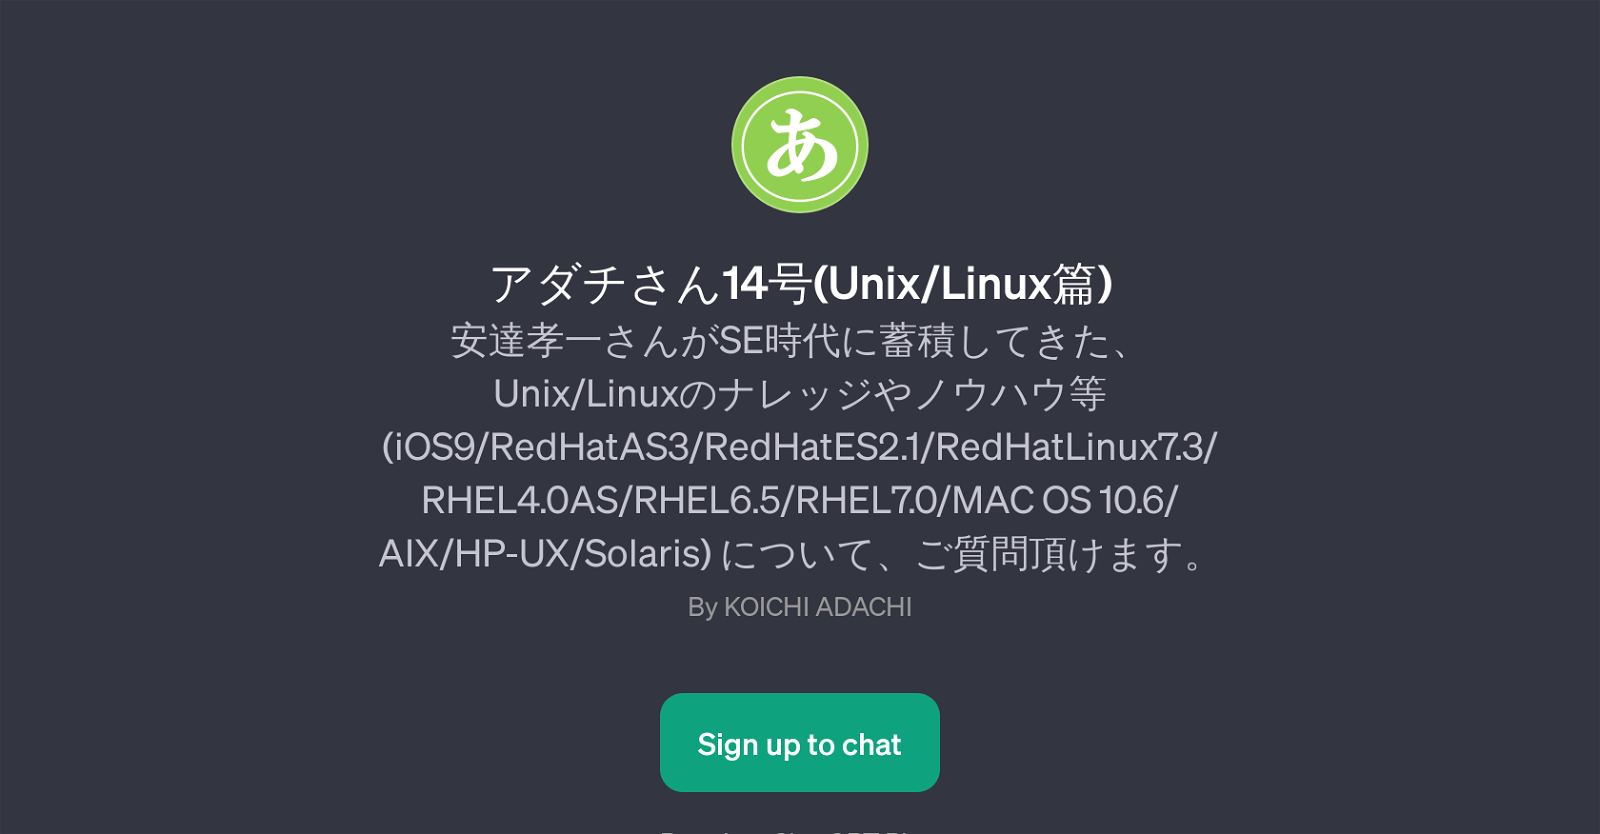 14(Unix/Linux) website